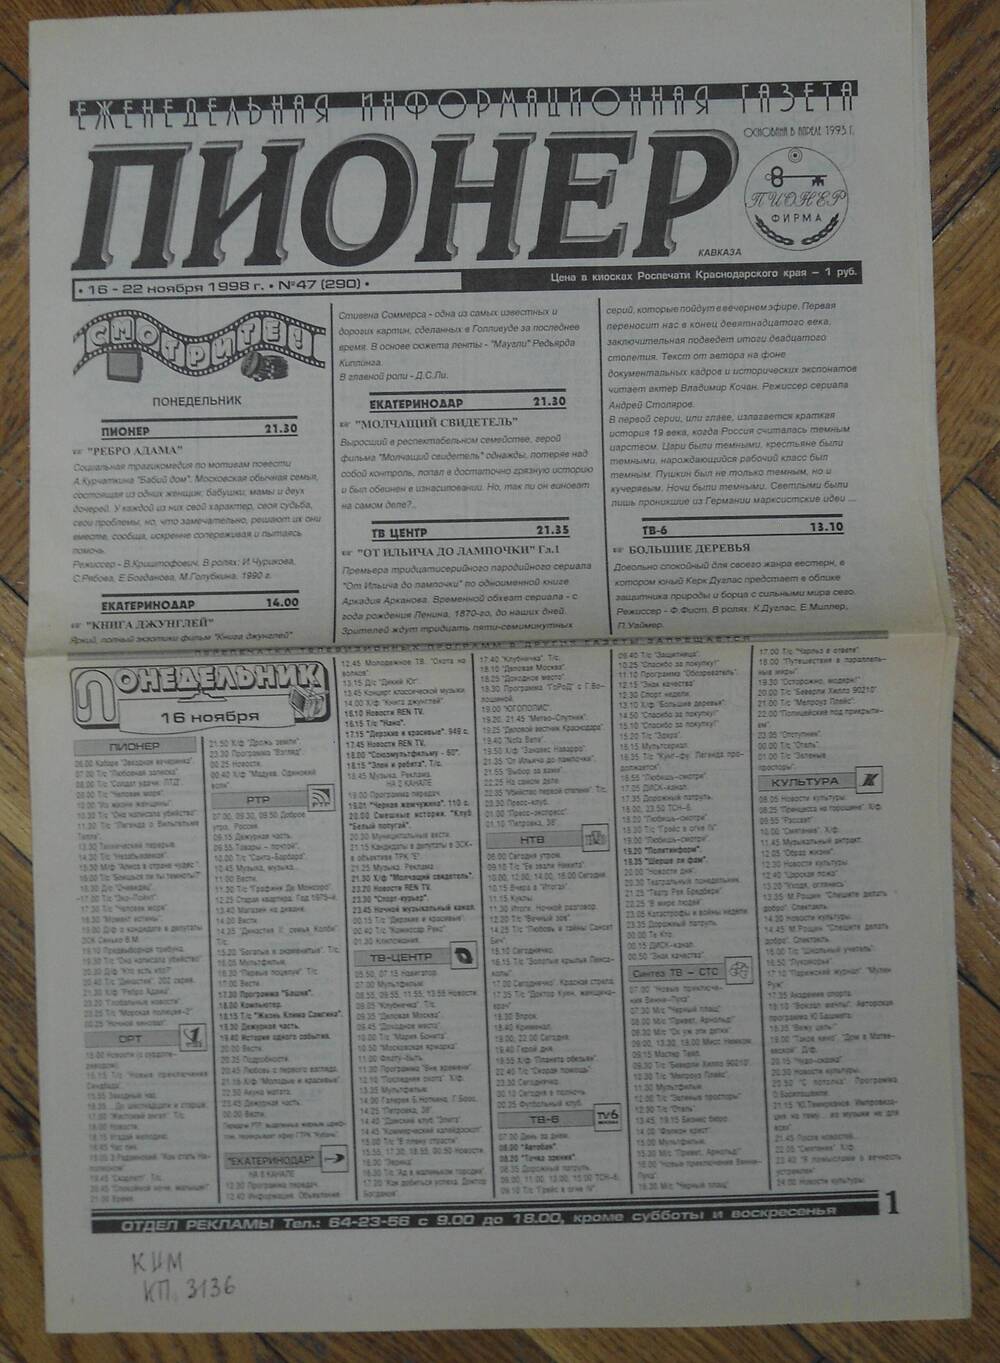 Еженедельная информационная газета «Пионер» № 47 от 1998 г.